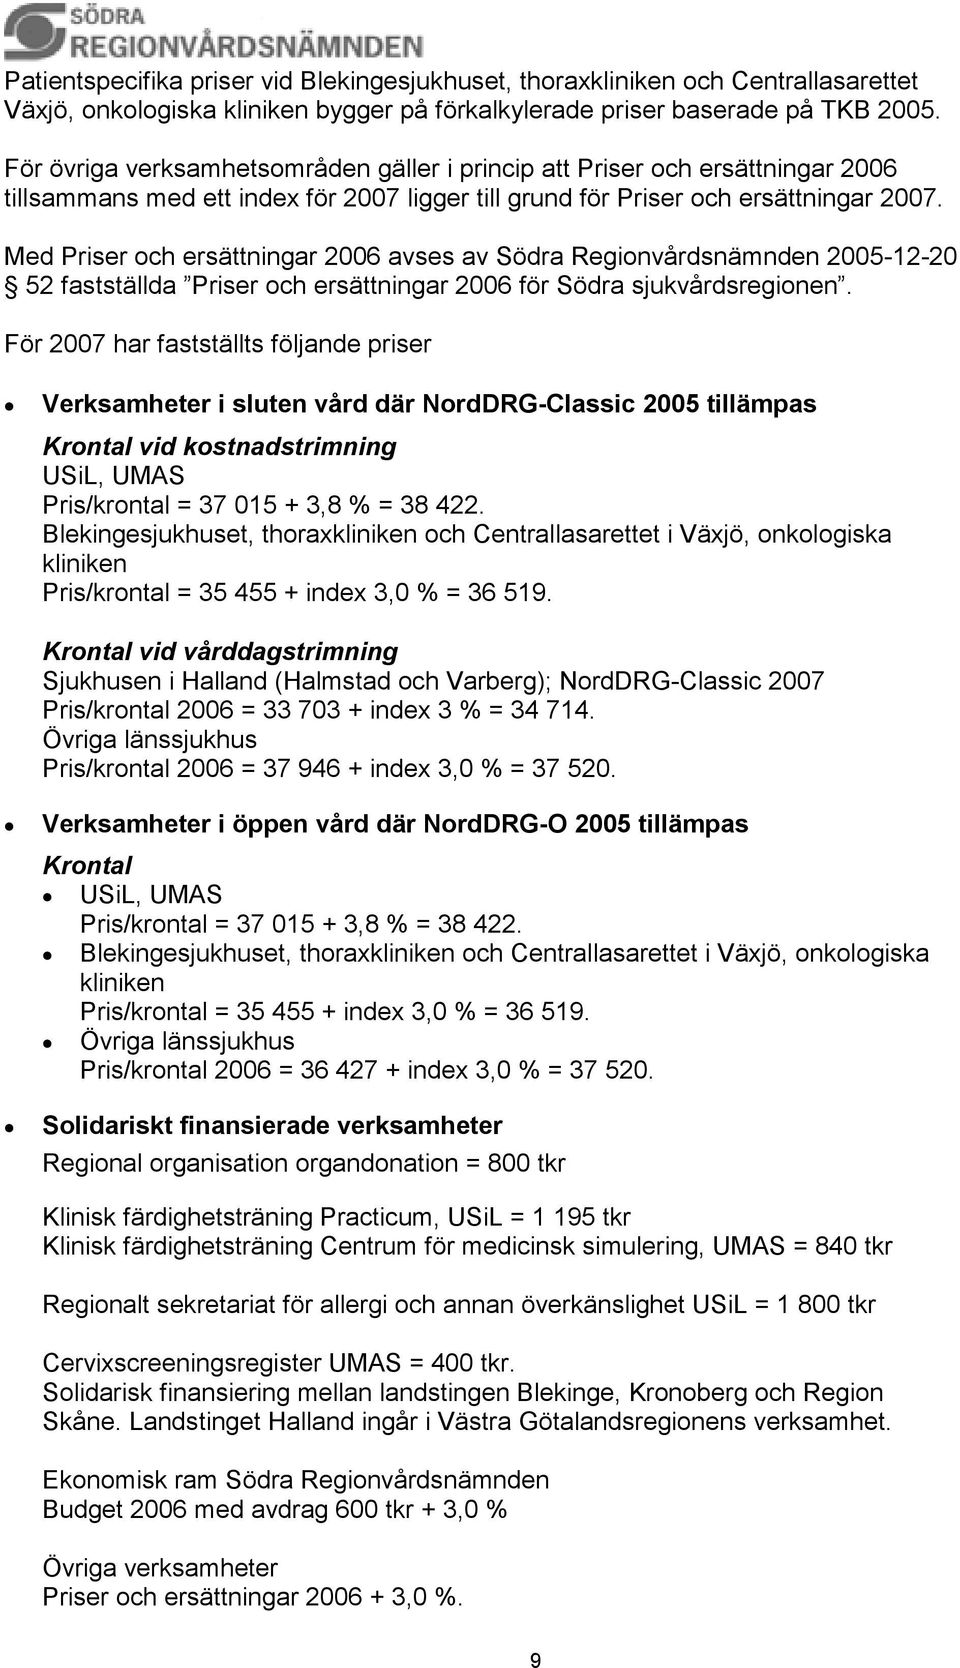 Med Priser och ersättningar 2006 avses av Södra Regionvårdsnämnden 2005-12-20 52 fastställda Priser och ersättningar 2006 för Södra sjukvårdsregionen.